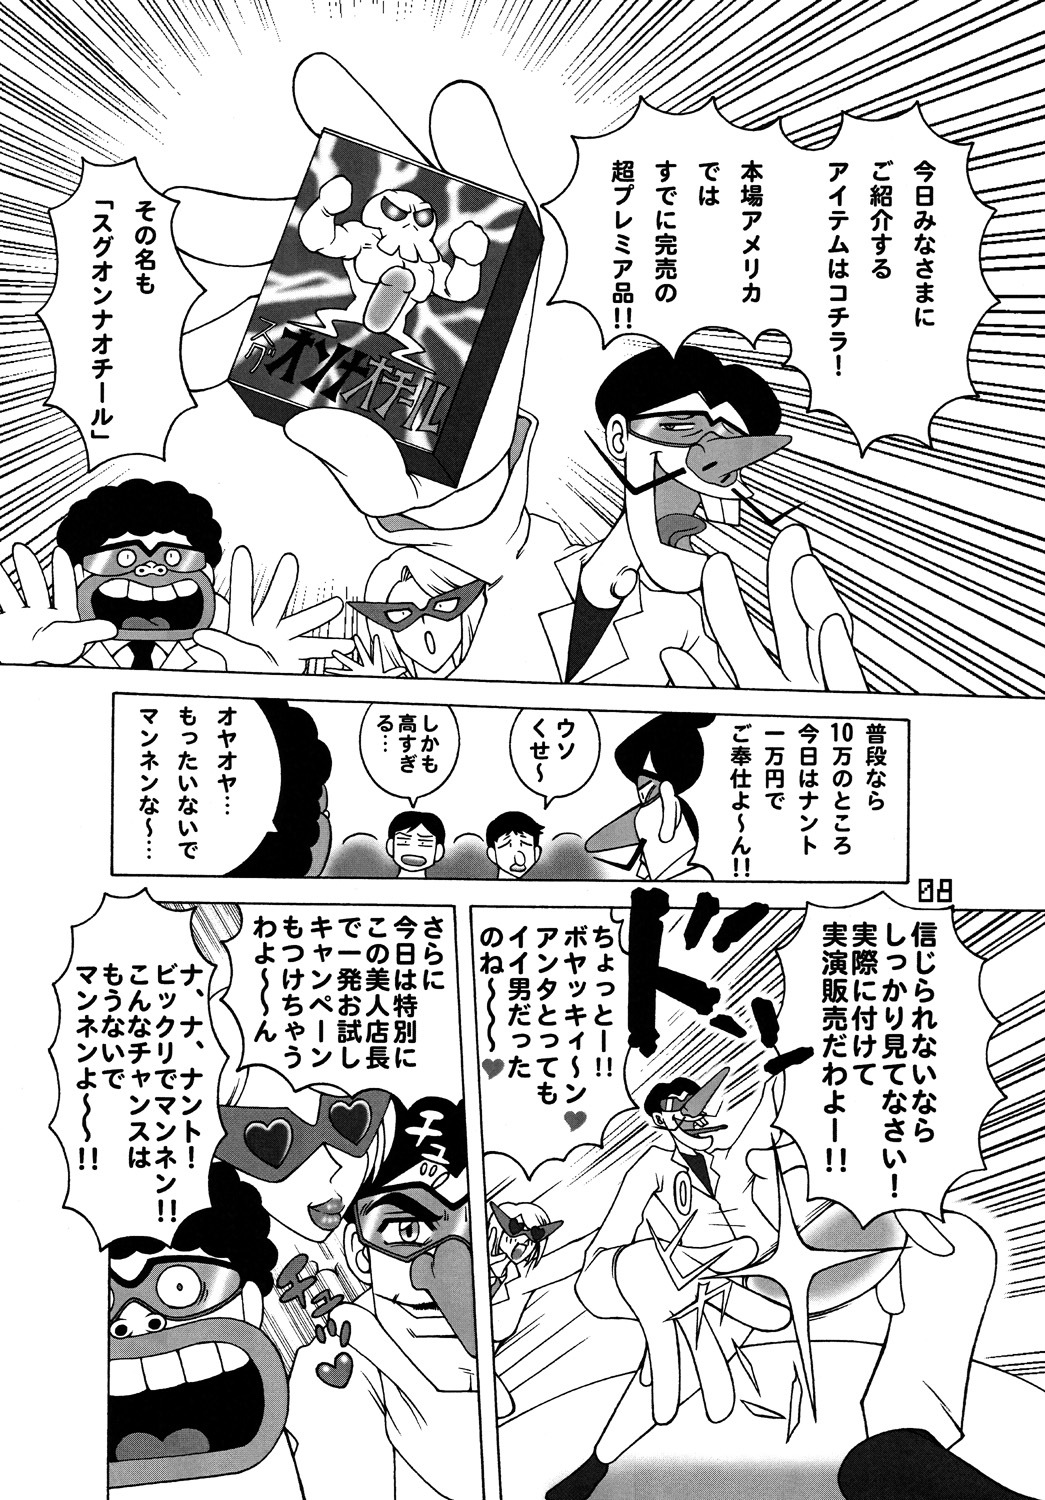 [DYNAMITE HONEY] Tatsunoko Dynamite page 7 full